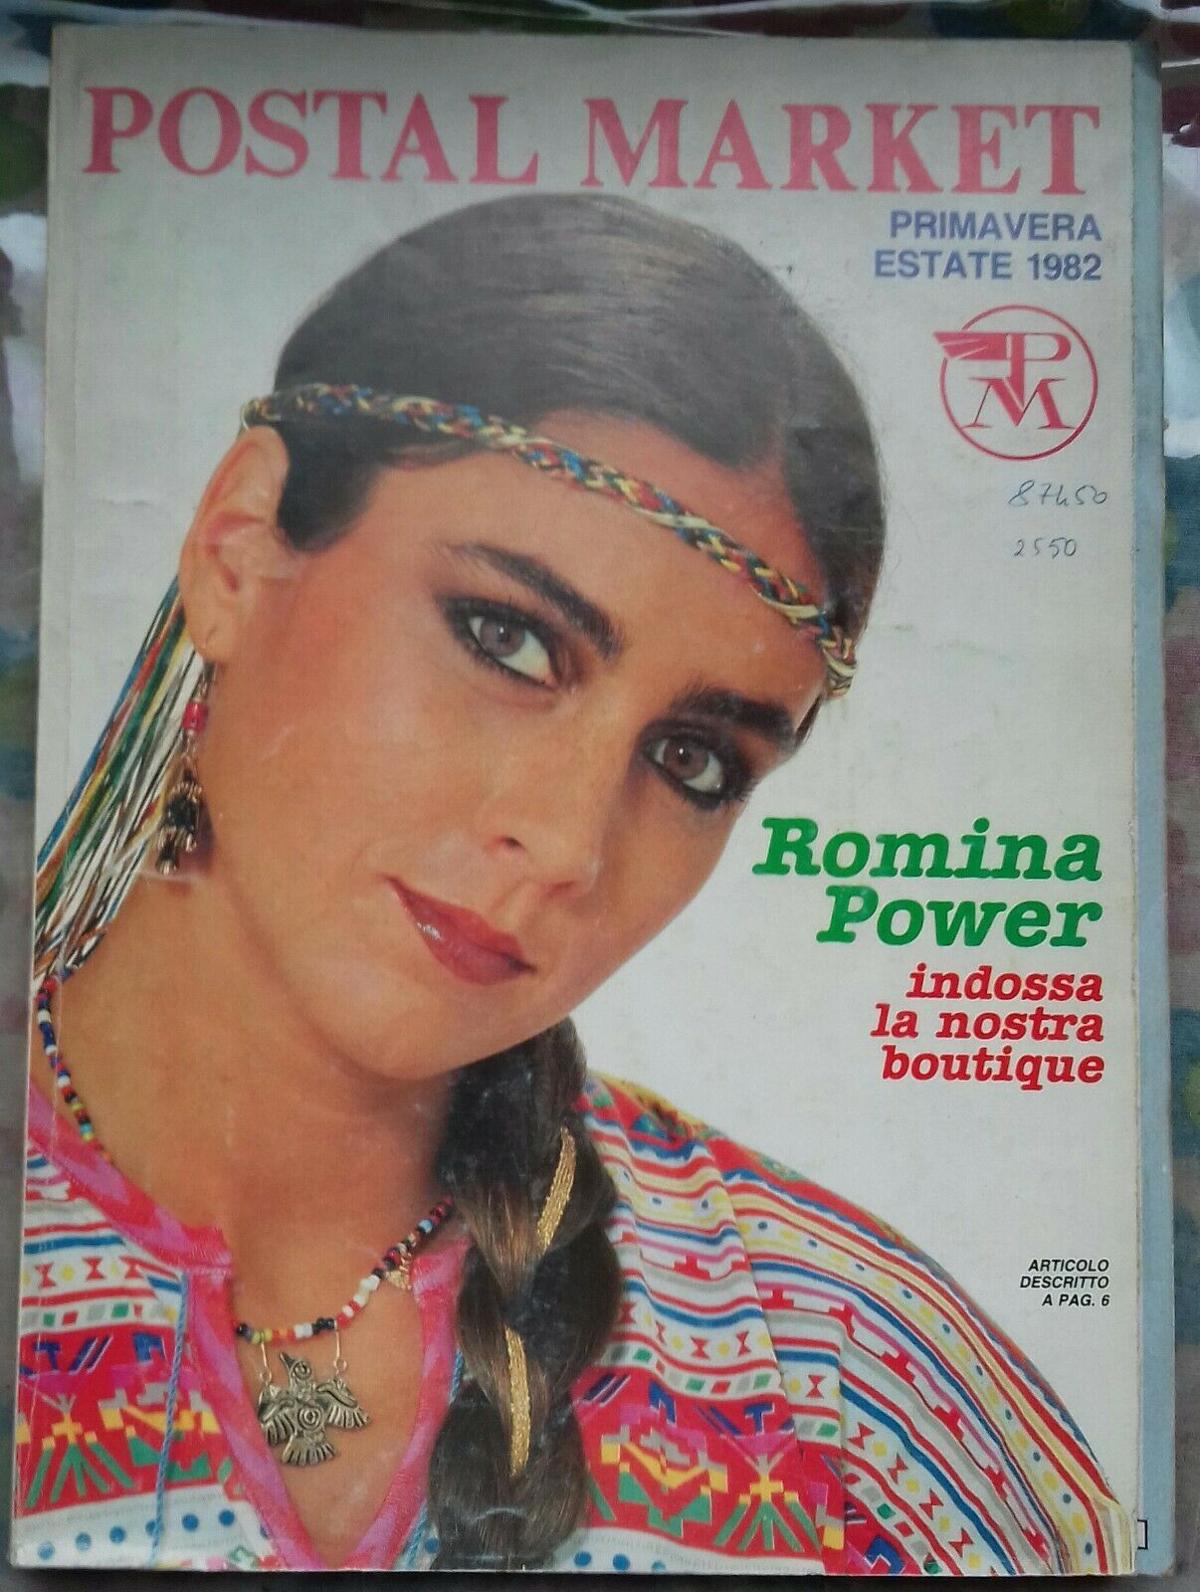 Postalmarket Romina Power   Copia